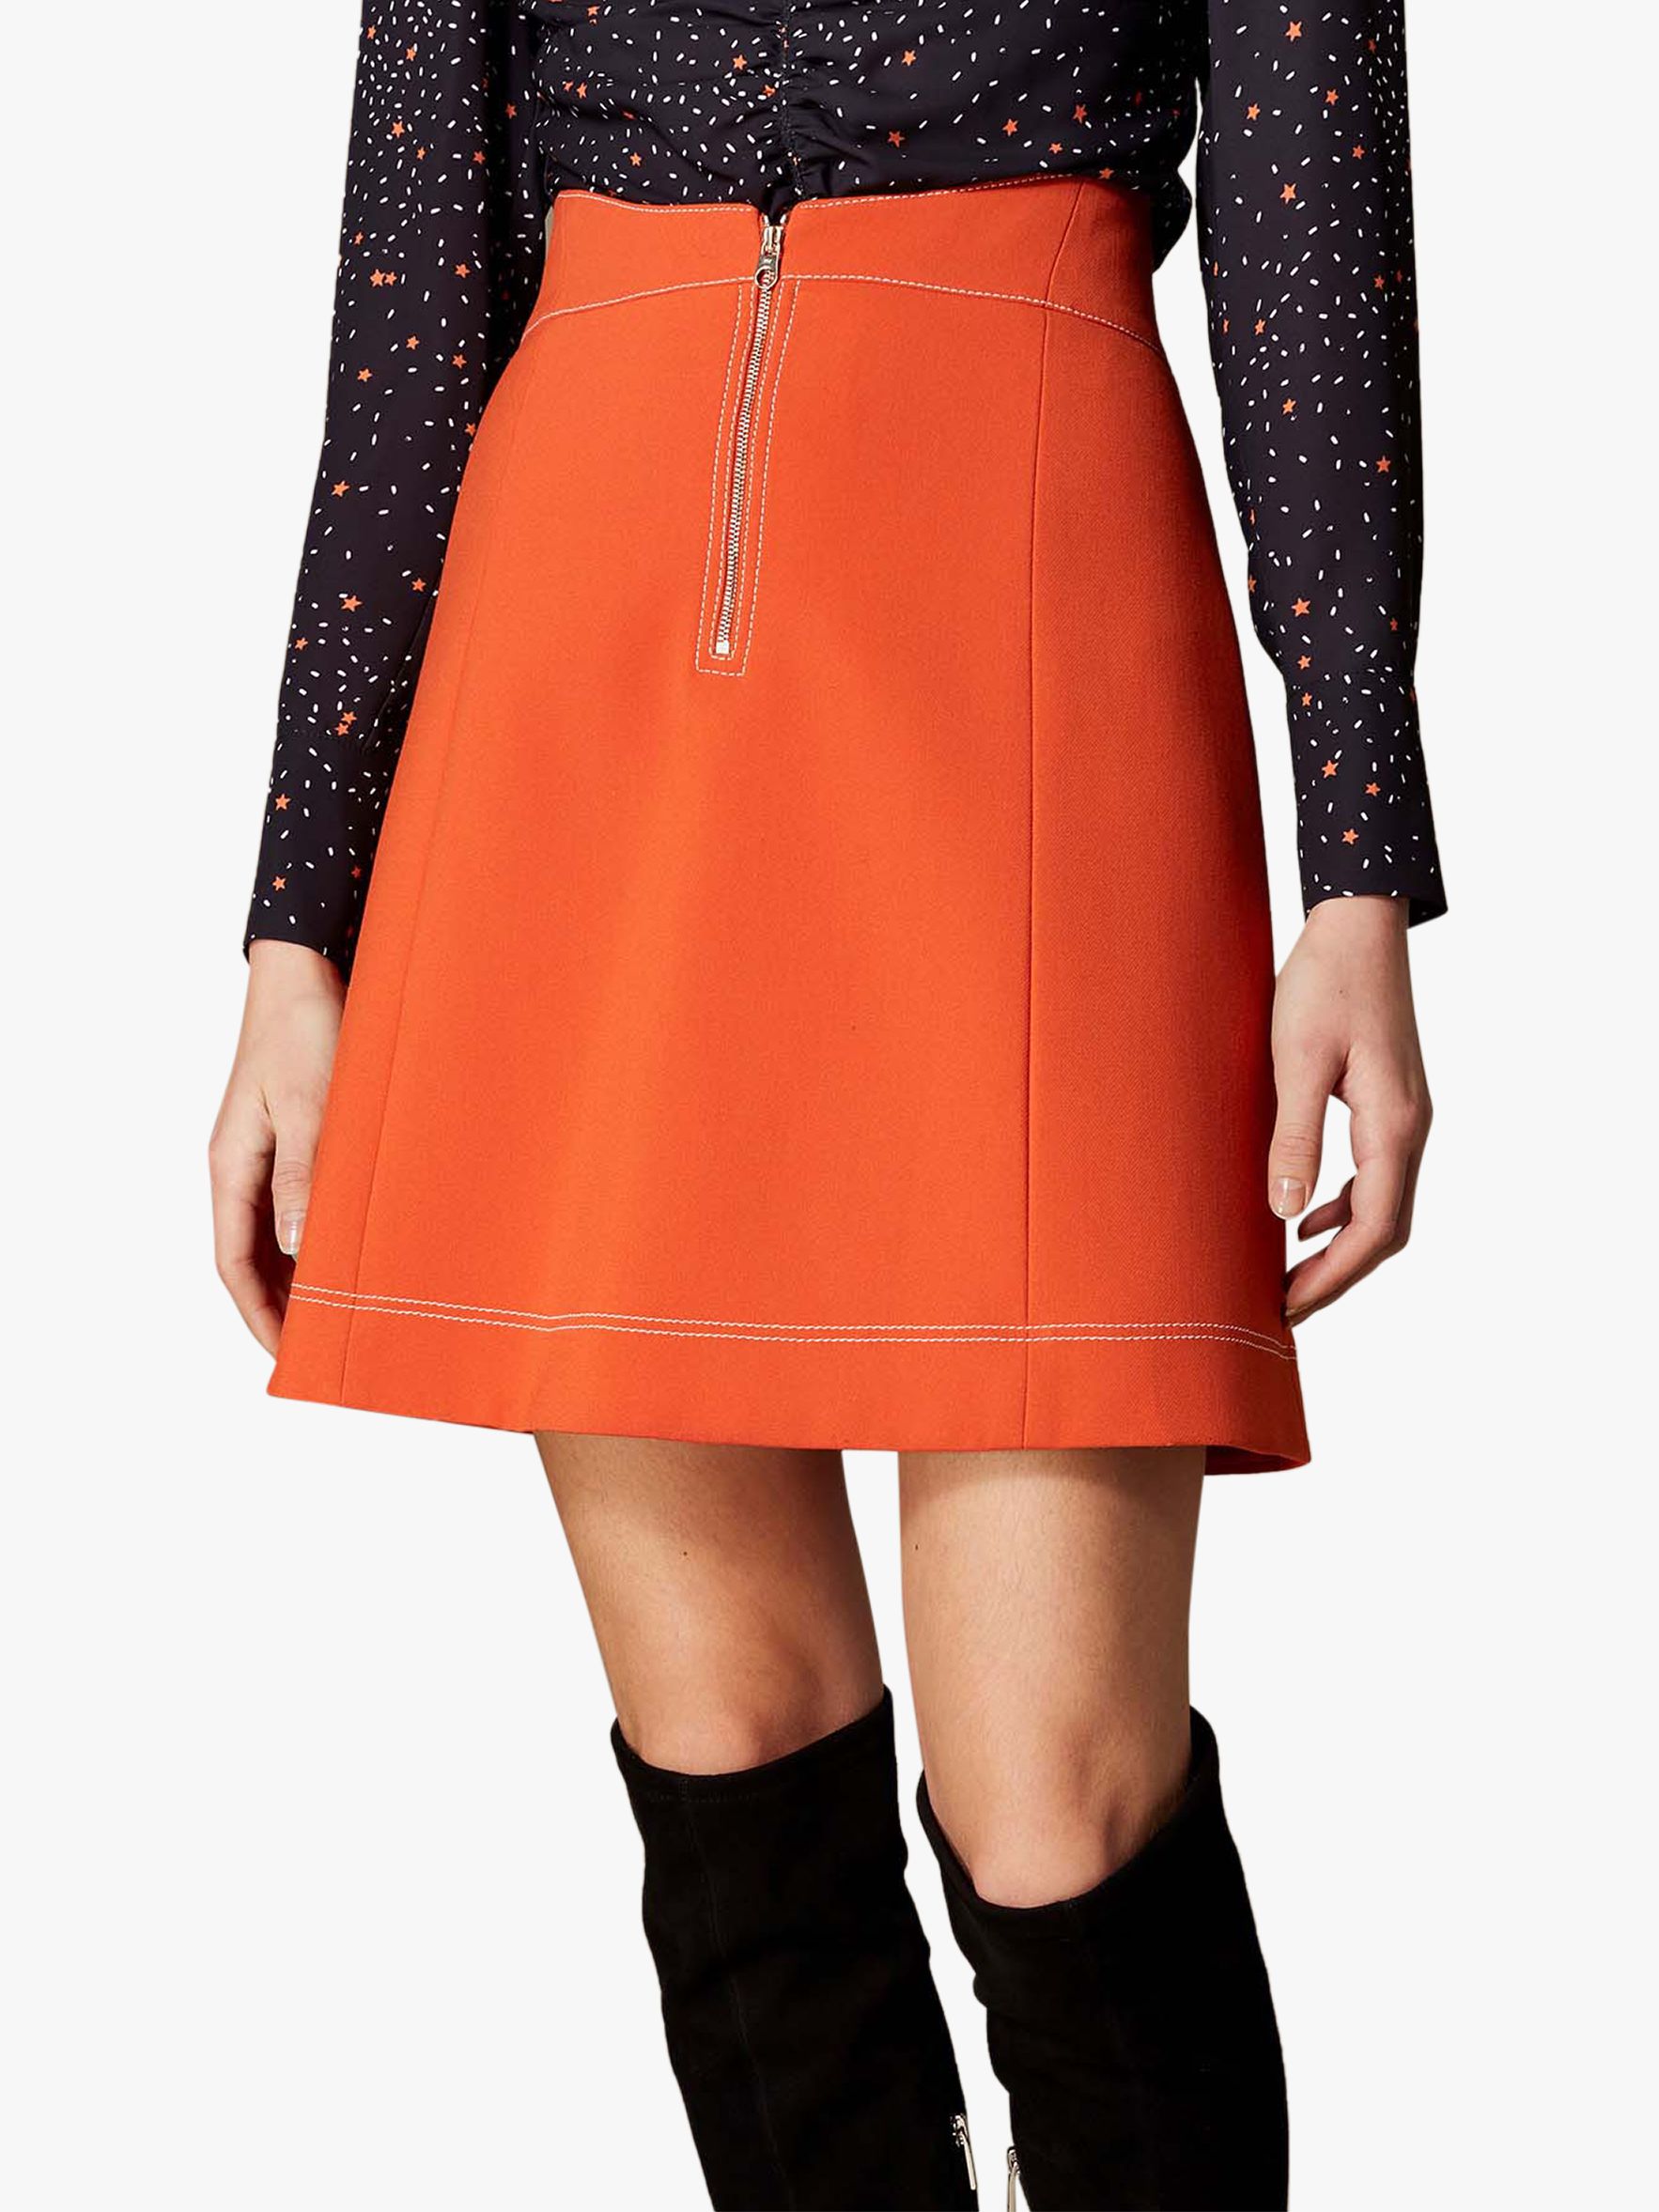 Karen Millen Contrast Stitch Mini Skirt, Orange